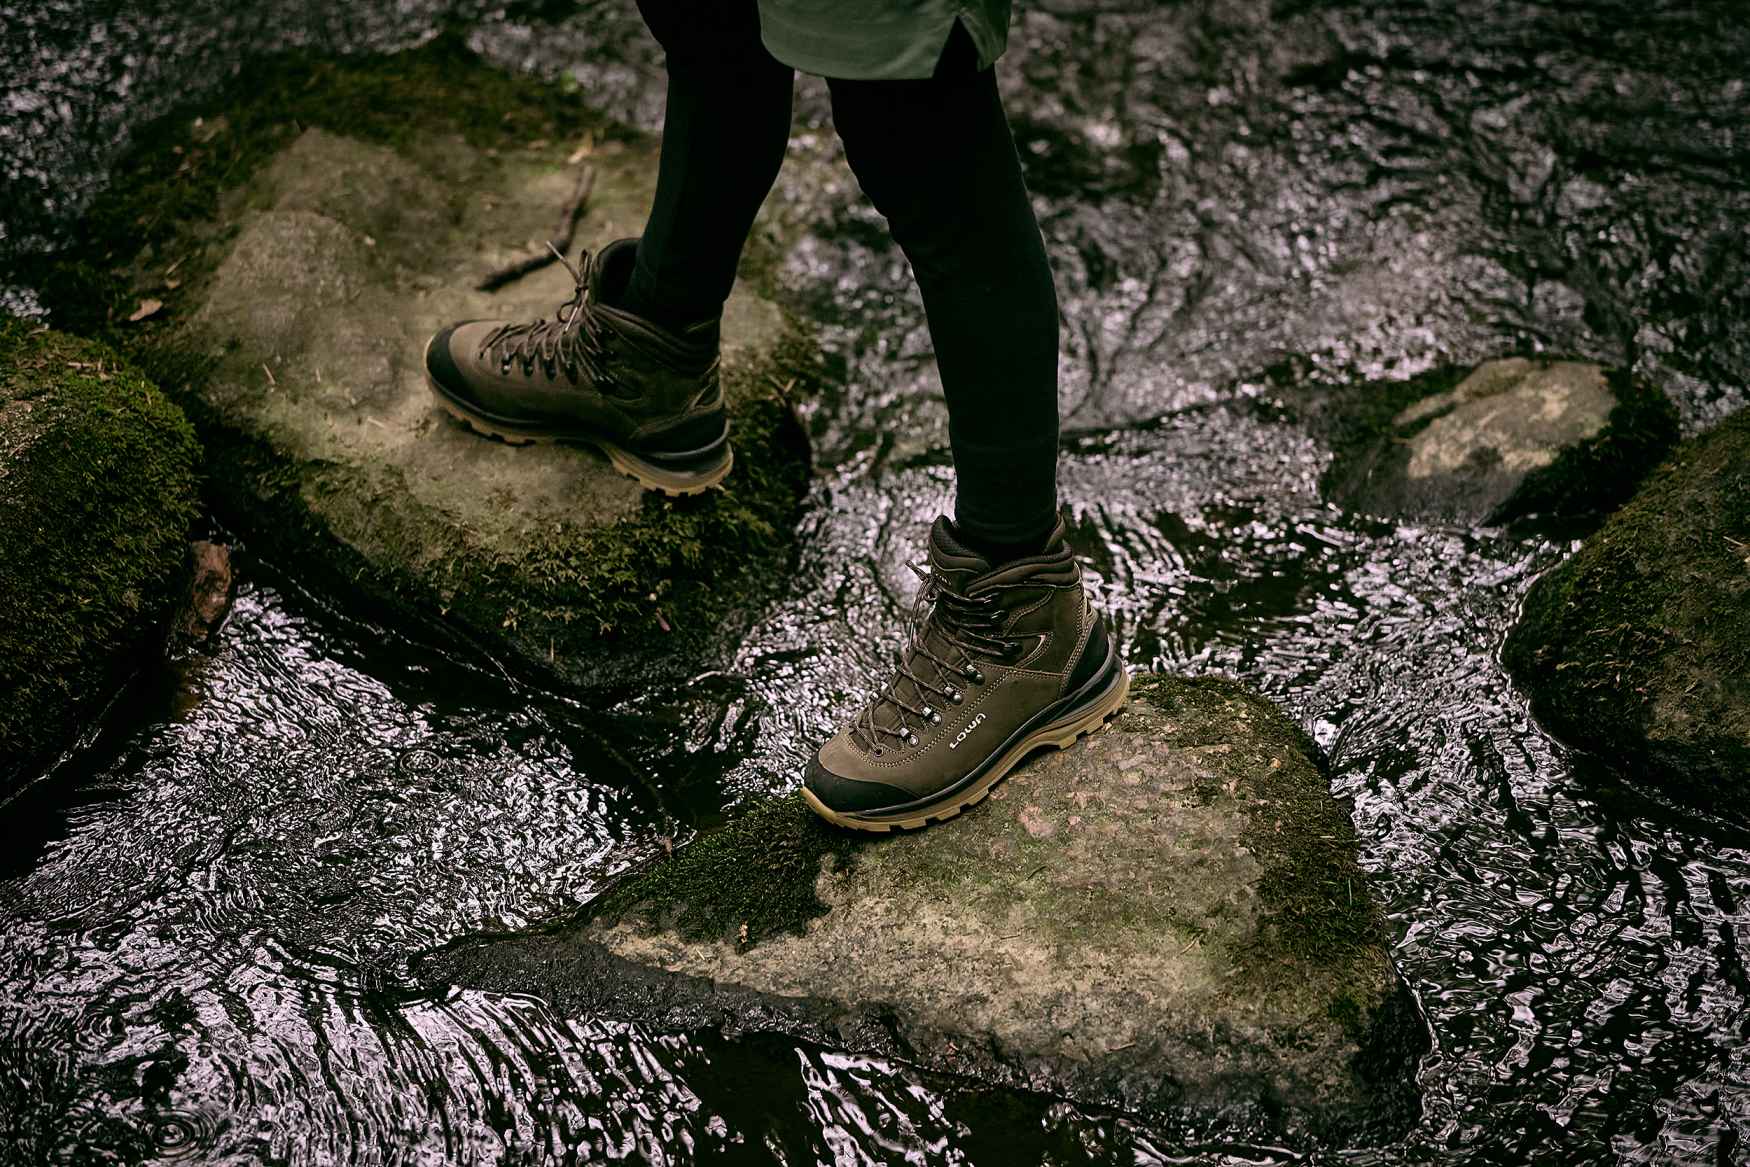 Geht es um anspruchsvolle Trekking-Touren quer durchs Gebirge, ist der LADY SPORT von LOWA eine absolute Legende. Wie eine gelungene Neuinterpretation einer solchen Ikone aussehen kann, stellt der LADY SPORT LL beeindruckend unter Beweis. Die Schuhe sind außen mit einem edlen und robusten Nubuk-Leder ausgestattet, während das Schuhinnere aufgrund der natürlichen Eigenschaften des weichen Lederfutters mit bestem Tragekomfort glänzt. Ergänzt wird das Gesamtpaket durch die neu entwickelte Vibram-APPTRAIL-DIVO-Ws-Sohle.